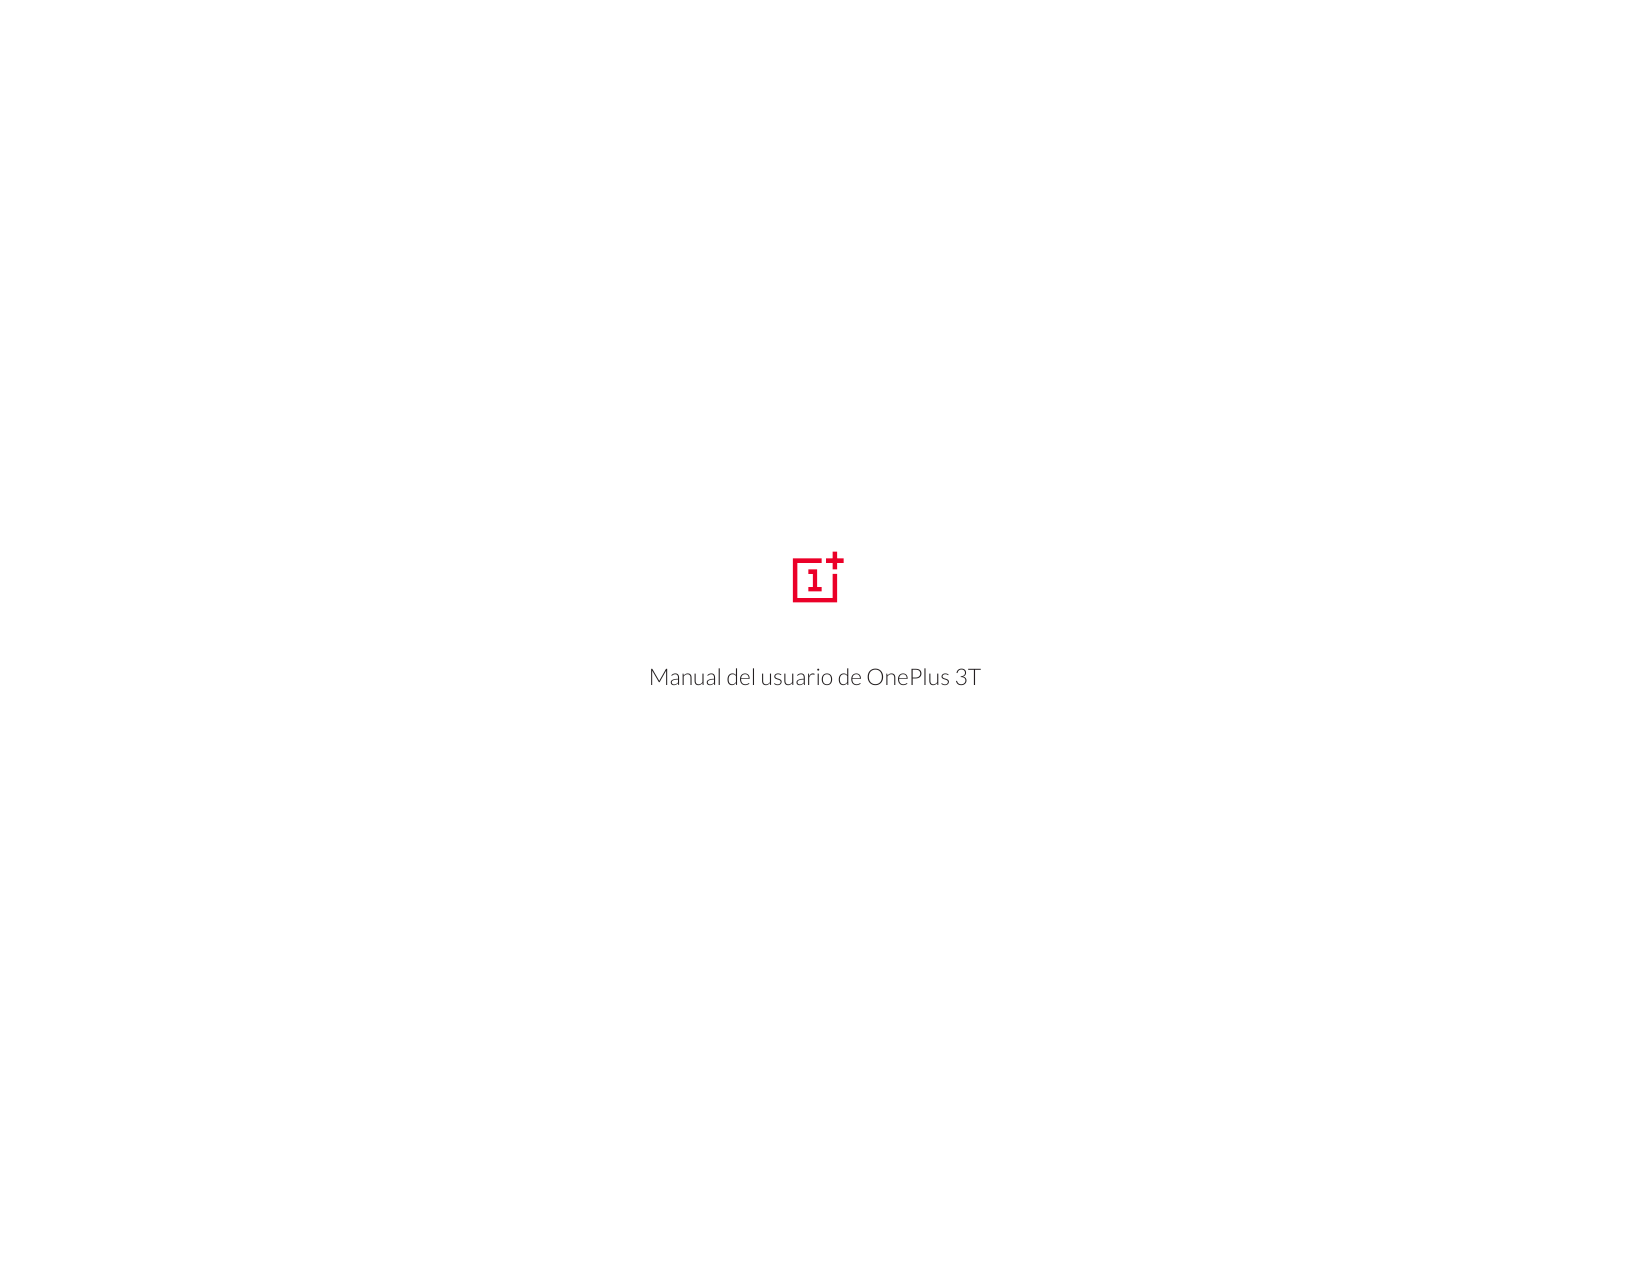 Manual del usuario de OnePlus 3T